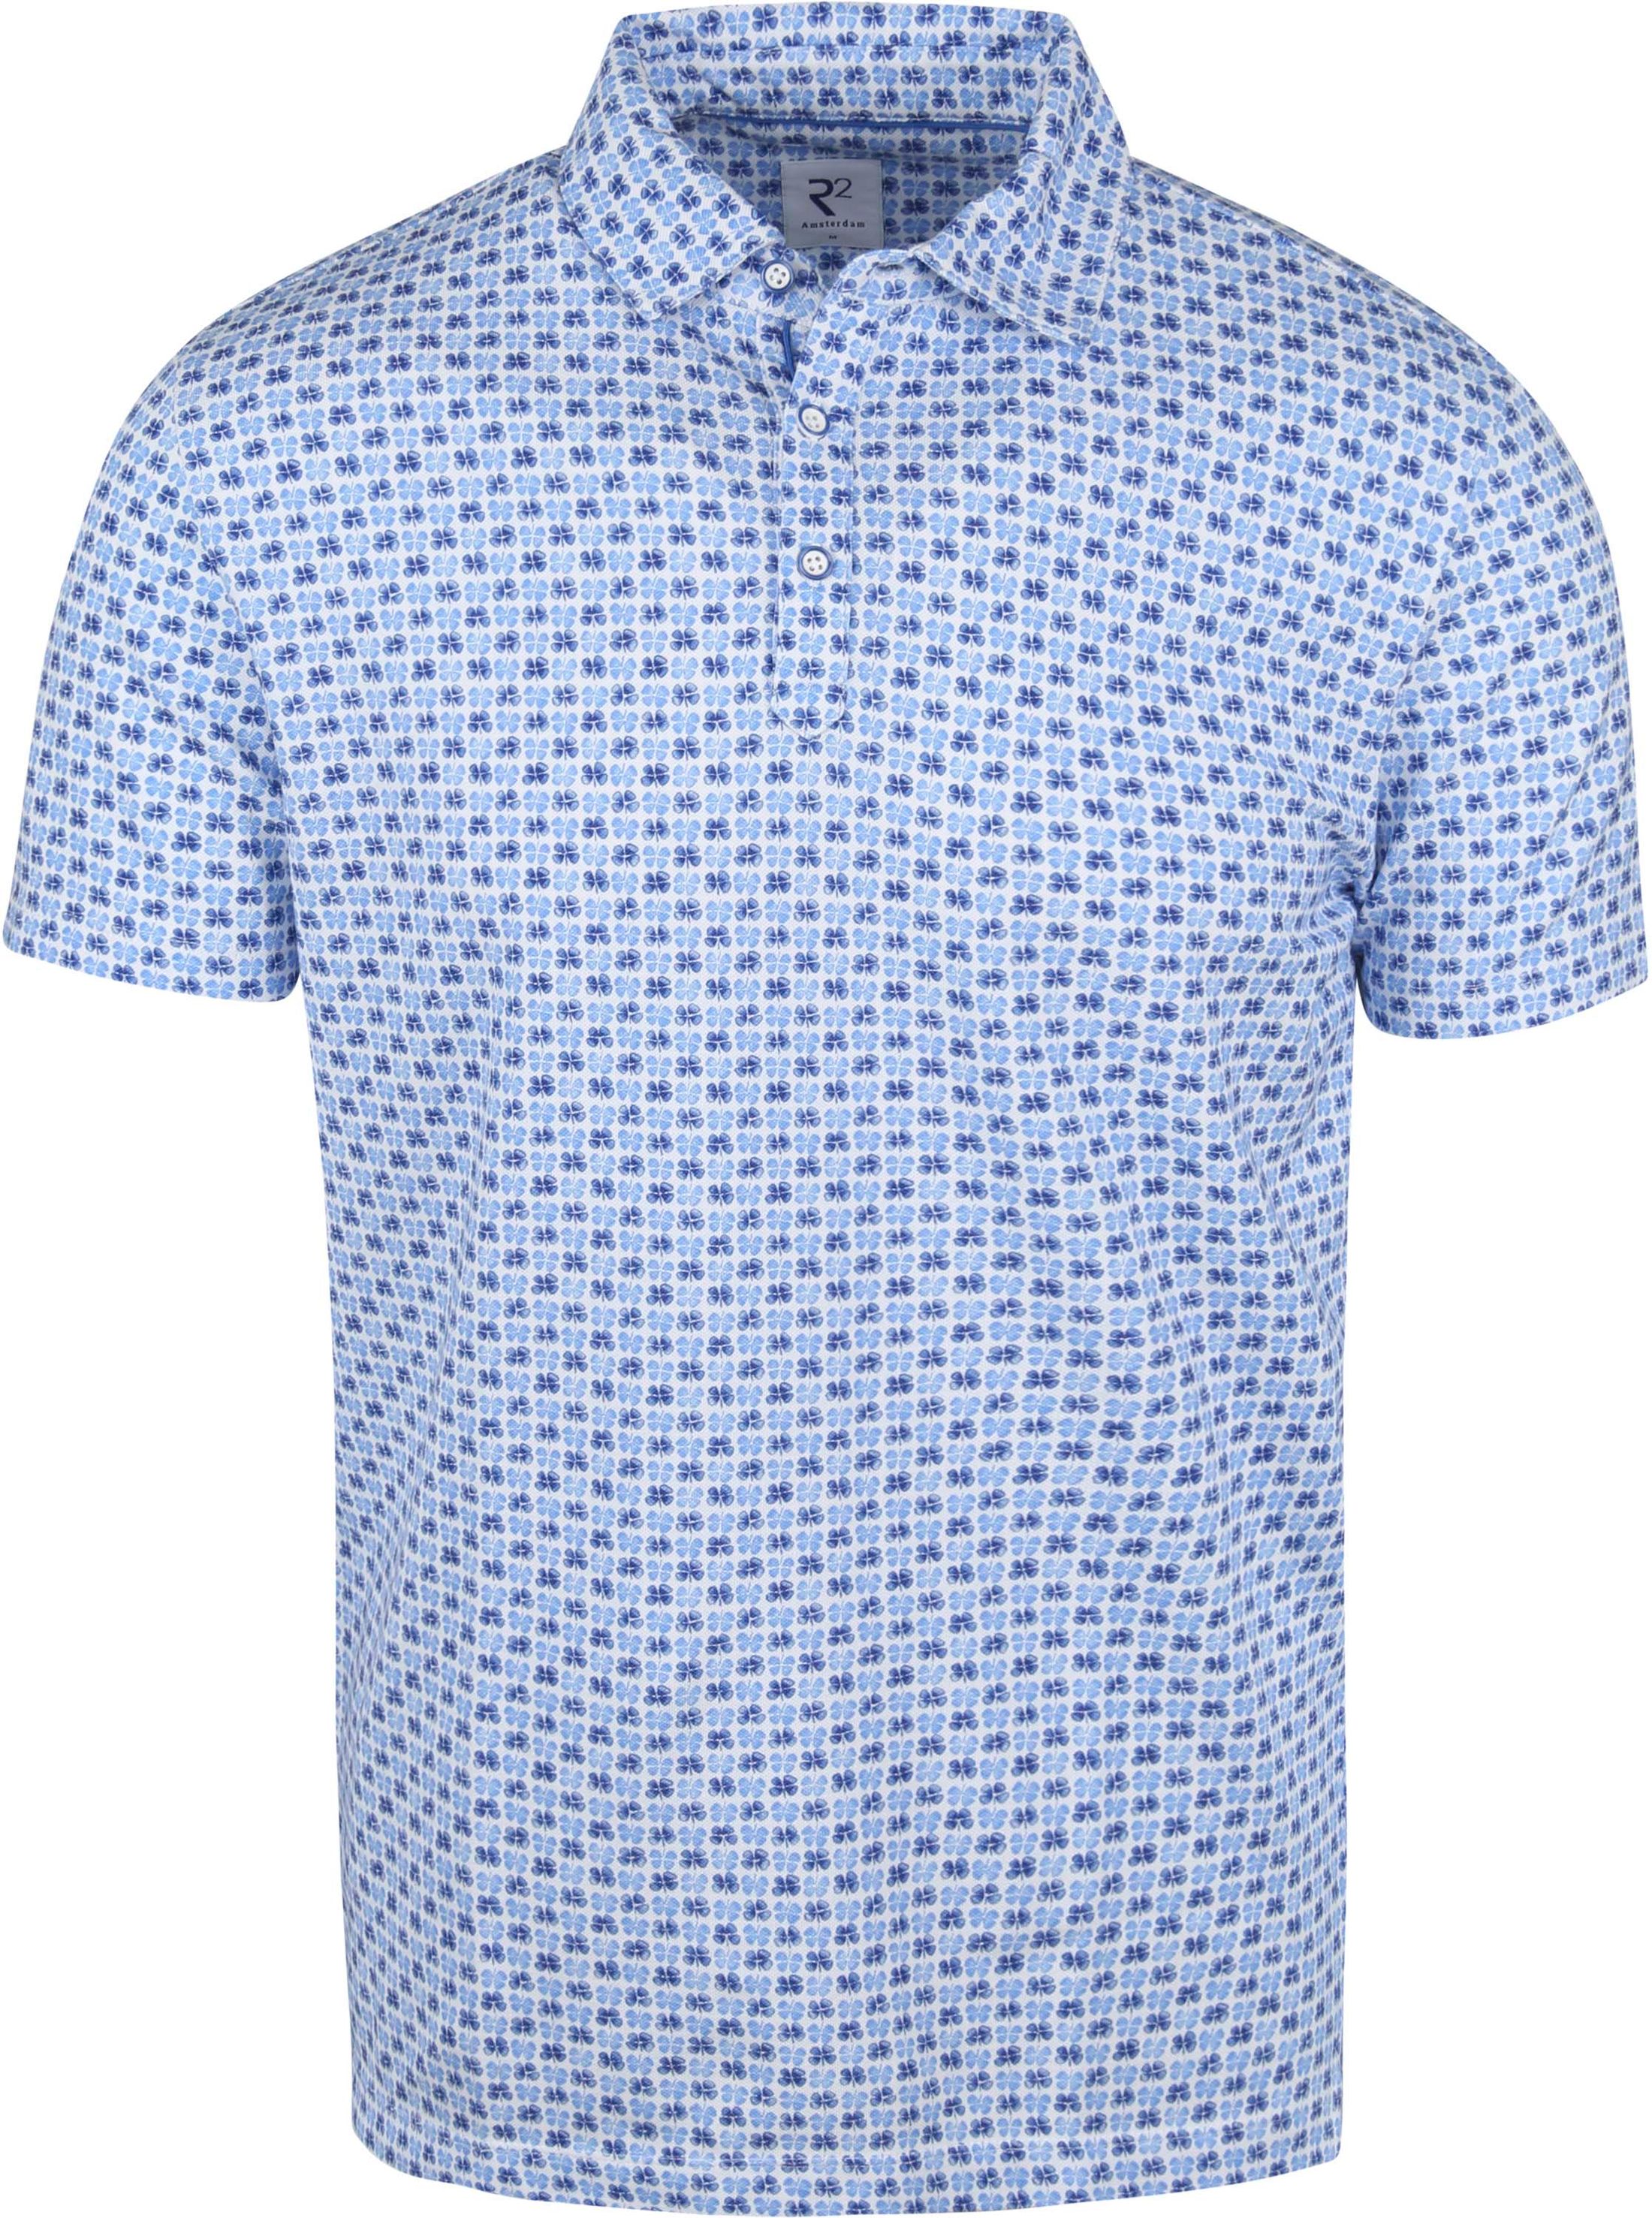 R2 Polo Shirt Cloverprint Blue size 3XL